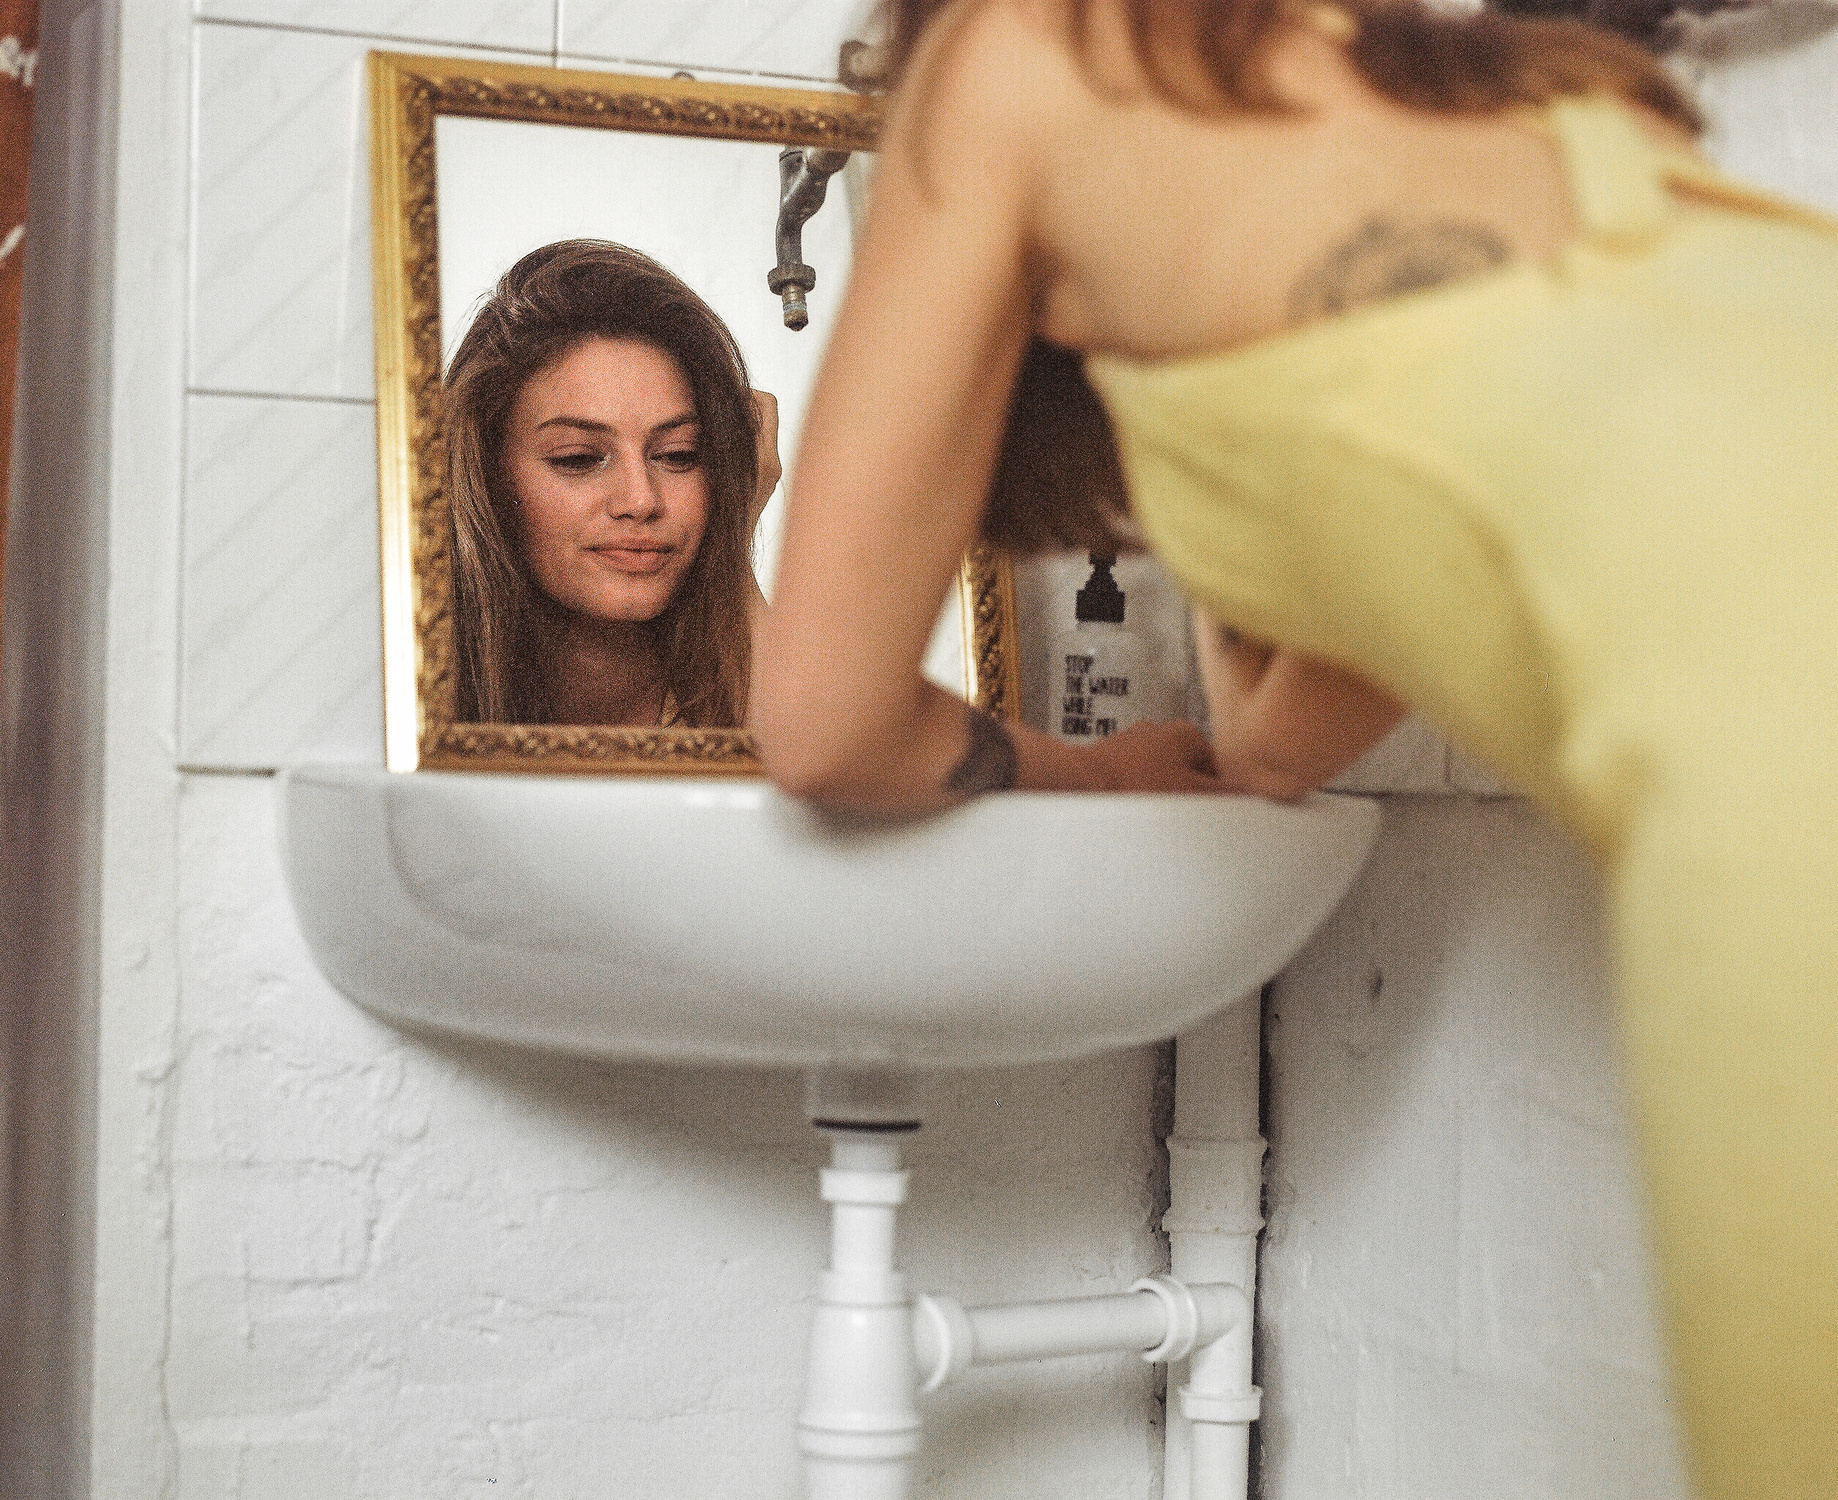 Modella con vestito giallo, appoggiata ad un lavandino, si guarda allo specchio, fotografia analogica con Mamiya RZ67 medio formato